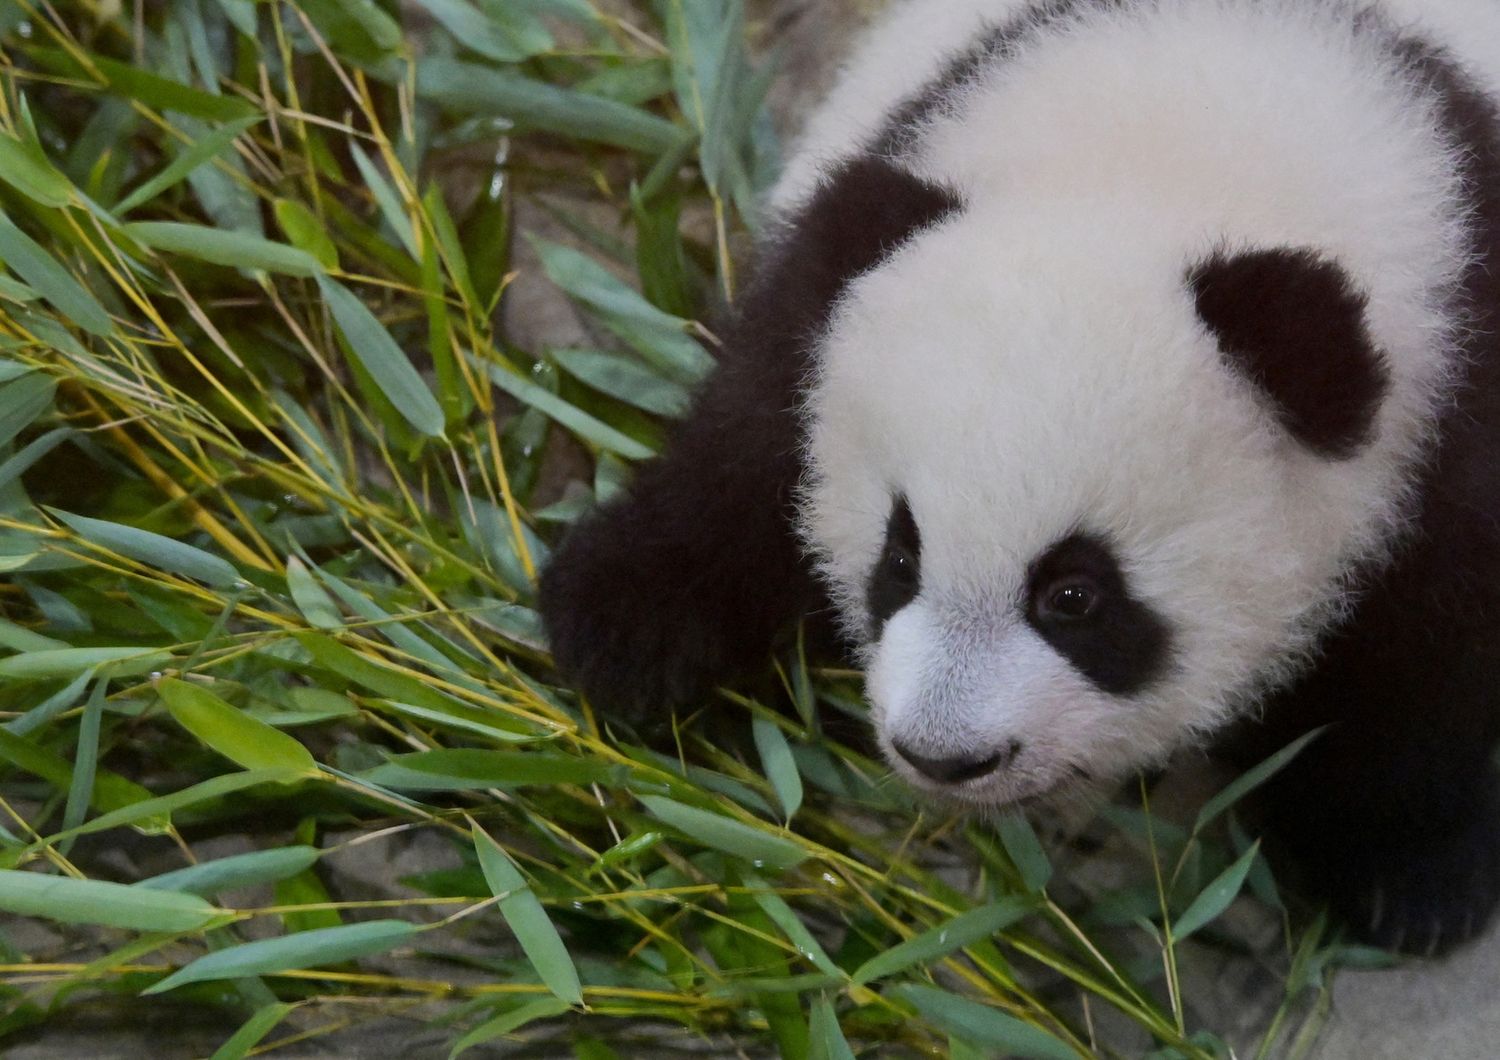 Studio panda paffuti mangiano solo bambu